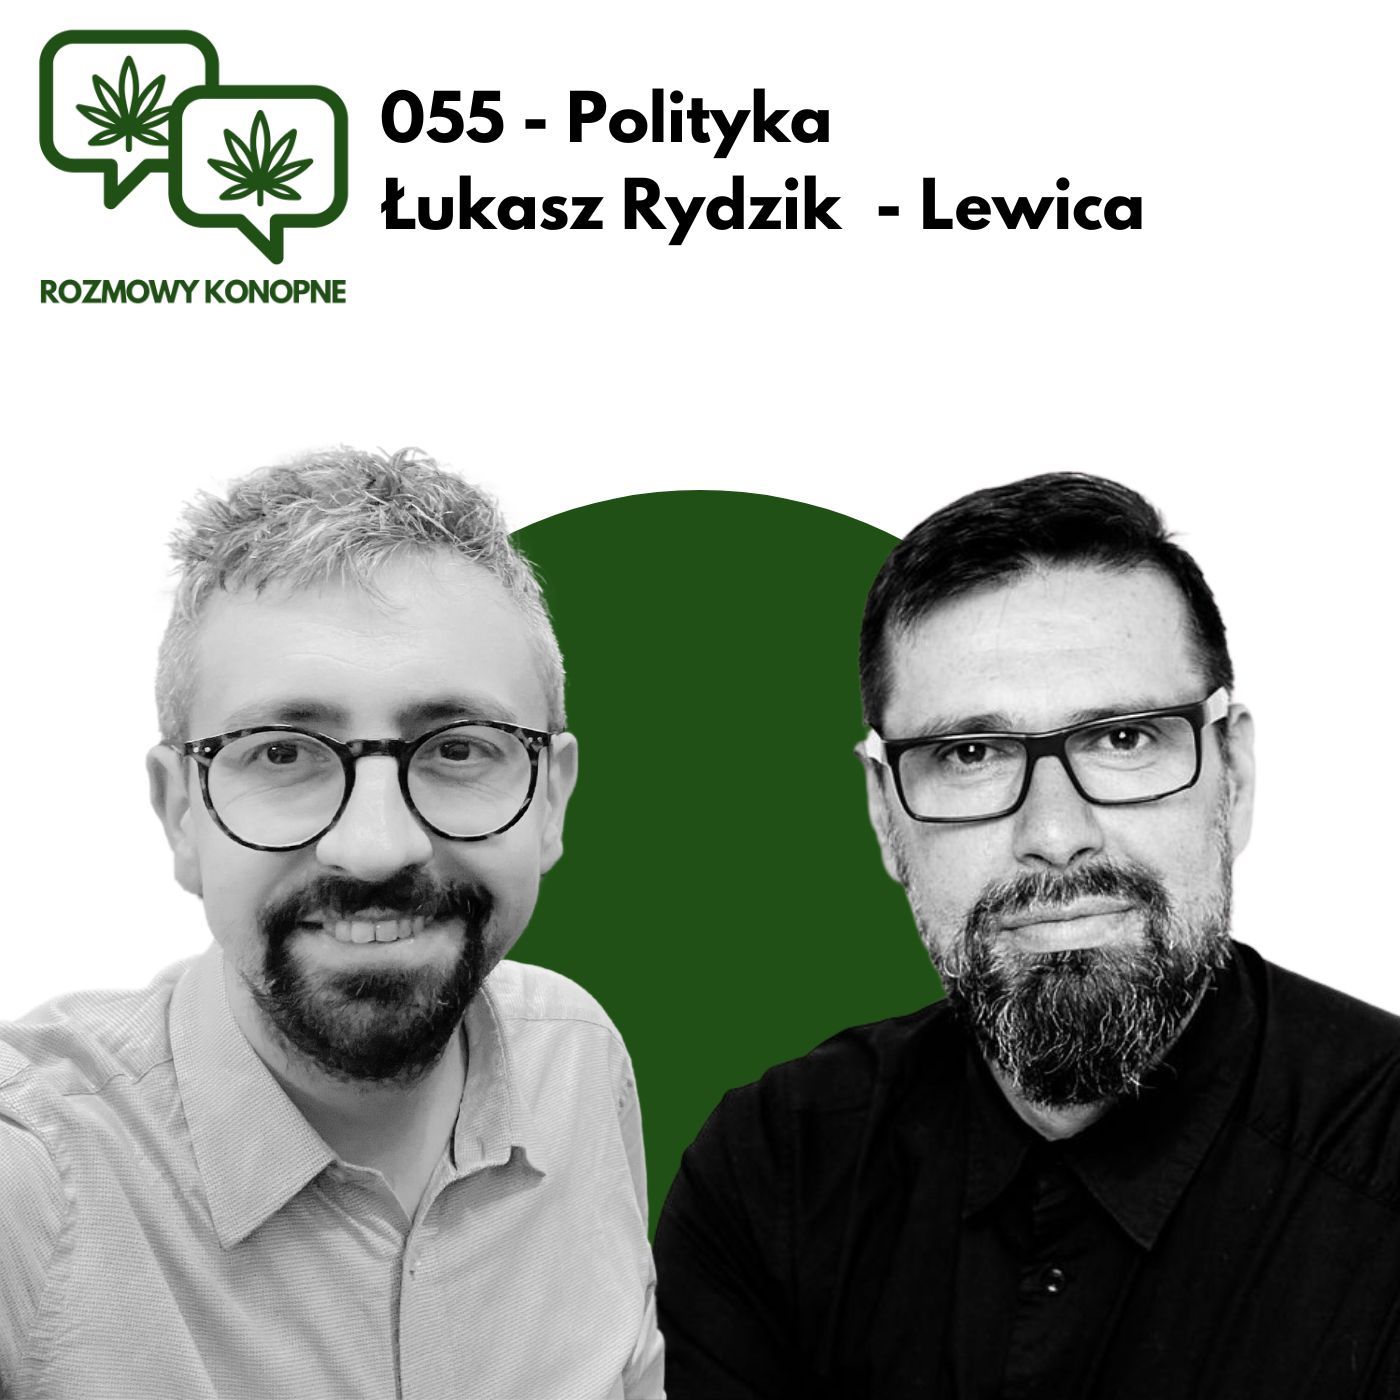 055 - Polityka - Łukasz Rydzik - Lewica